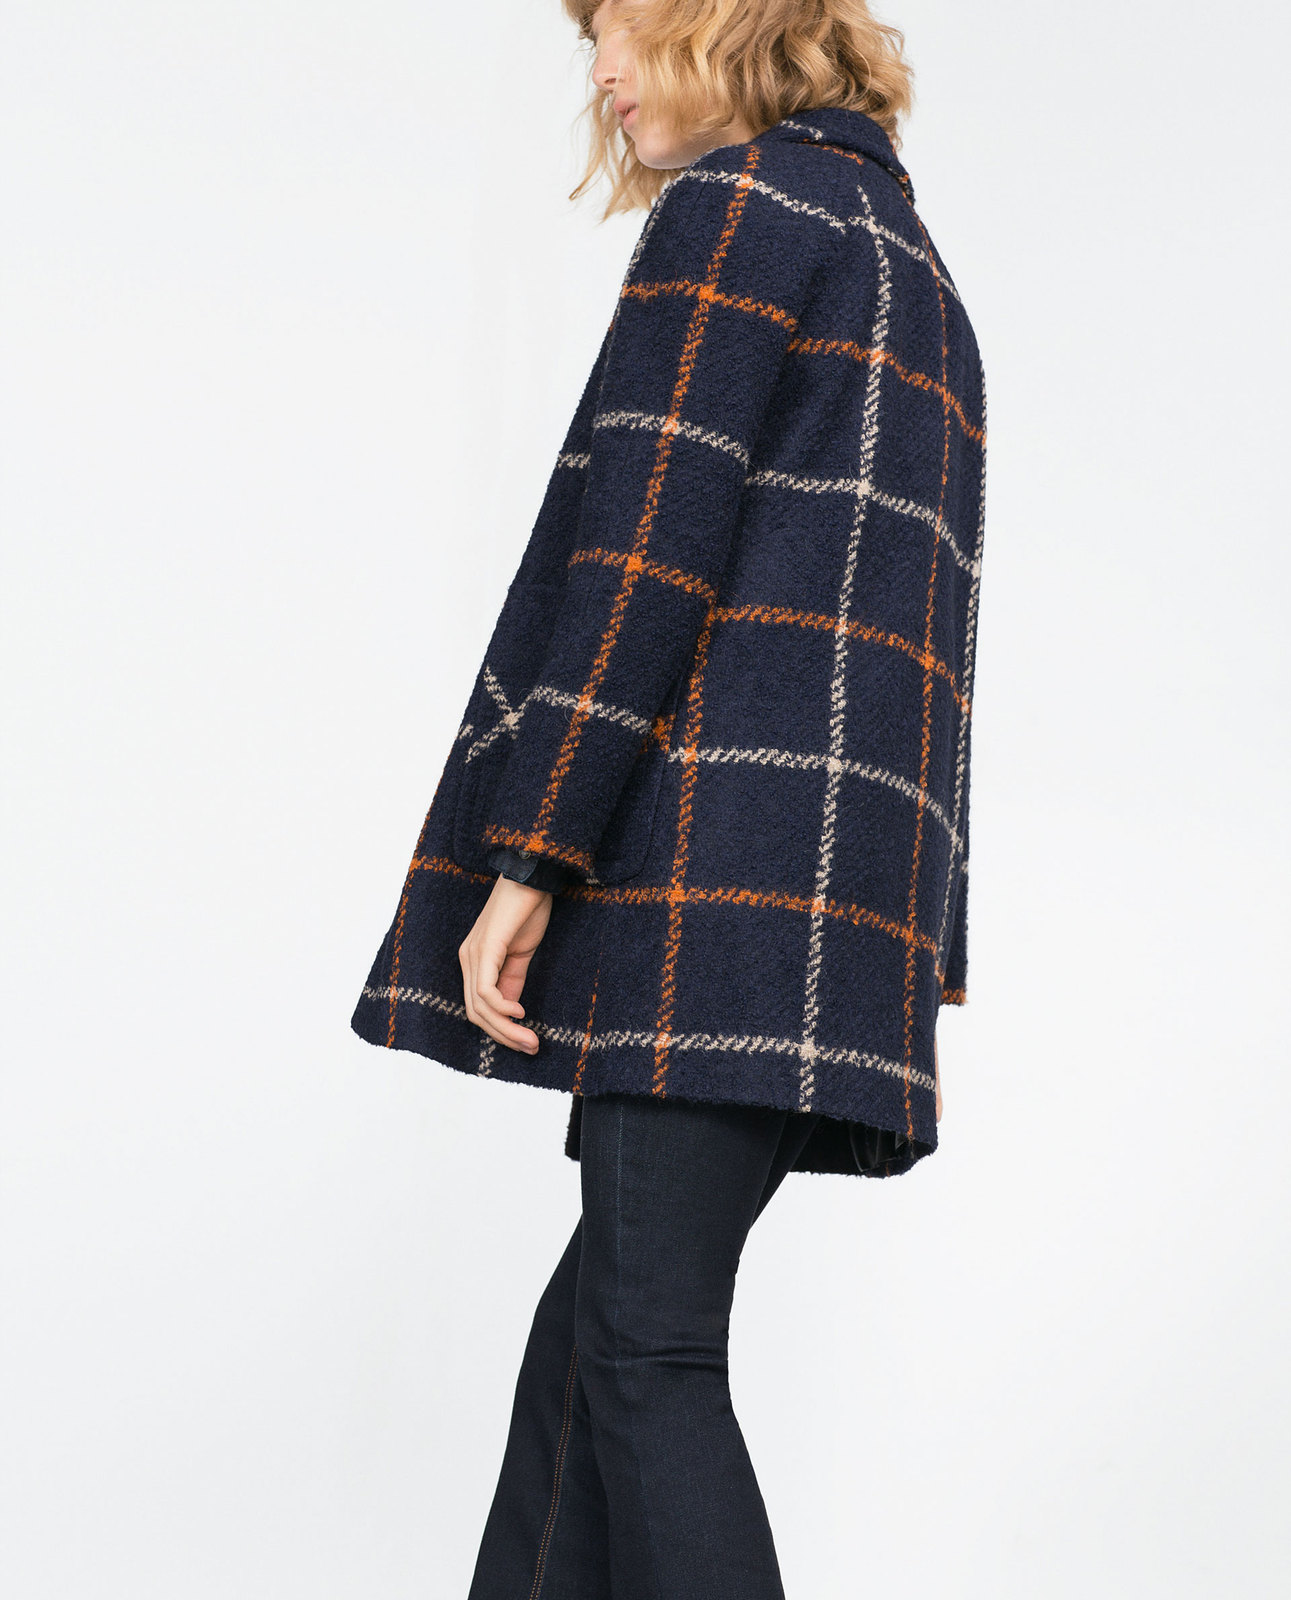 Zara női gyapjú buklé kabát 2015 fotója